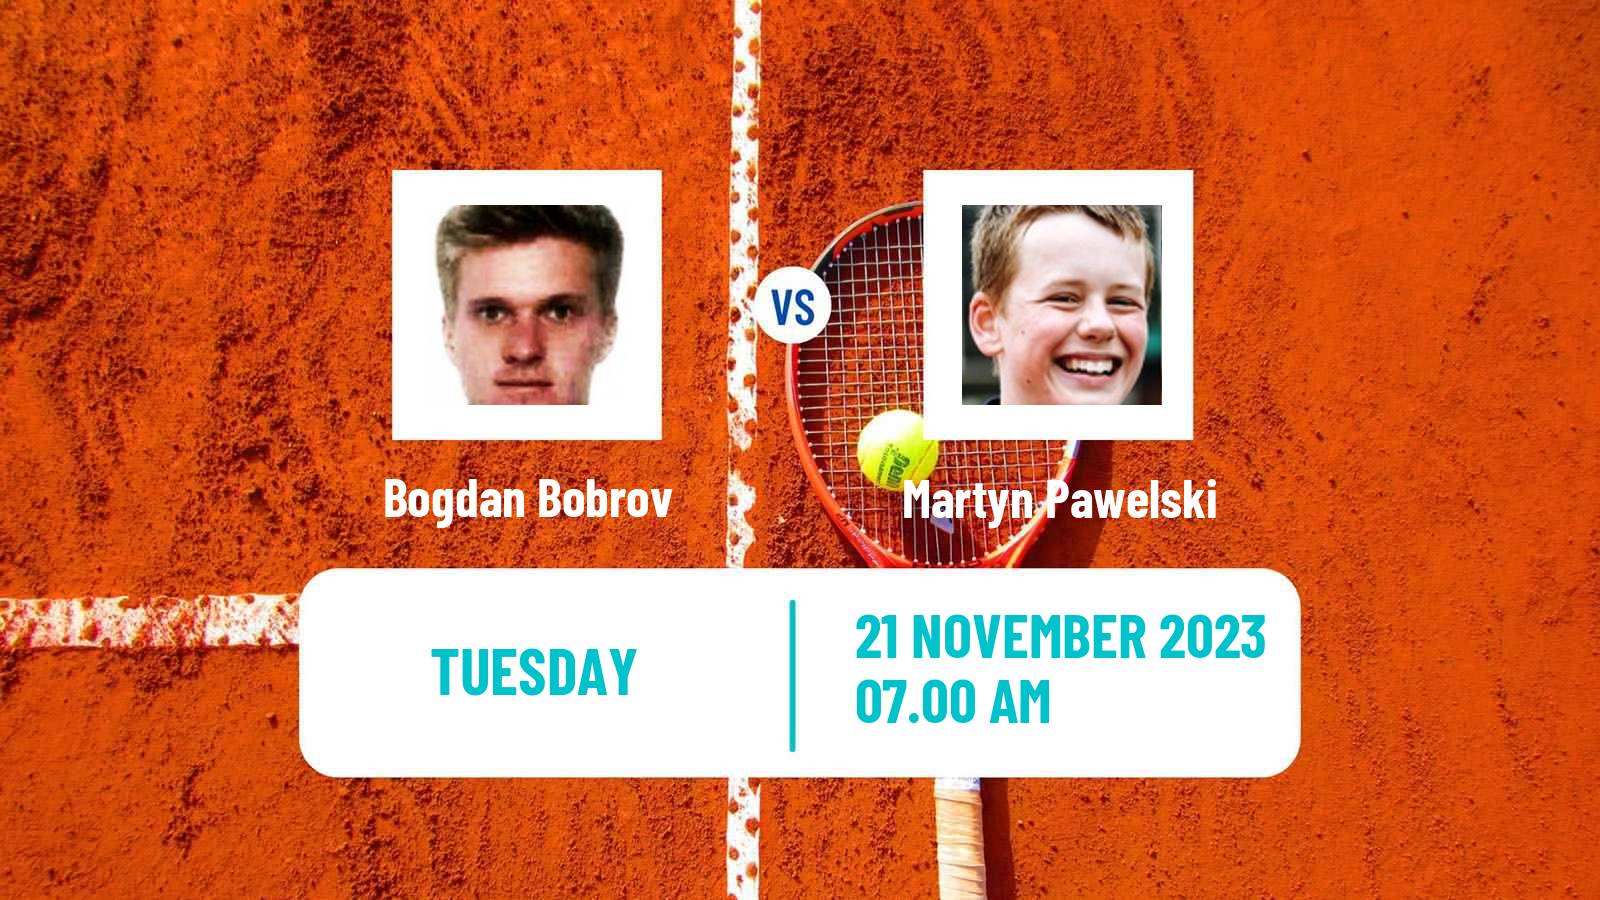 Tennis ITF M25 Monastir 9 Men Bogdan Bobrov - Martyn Pawelski